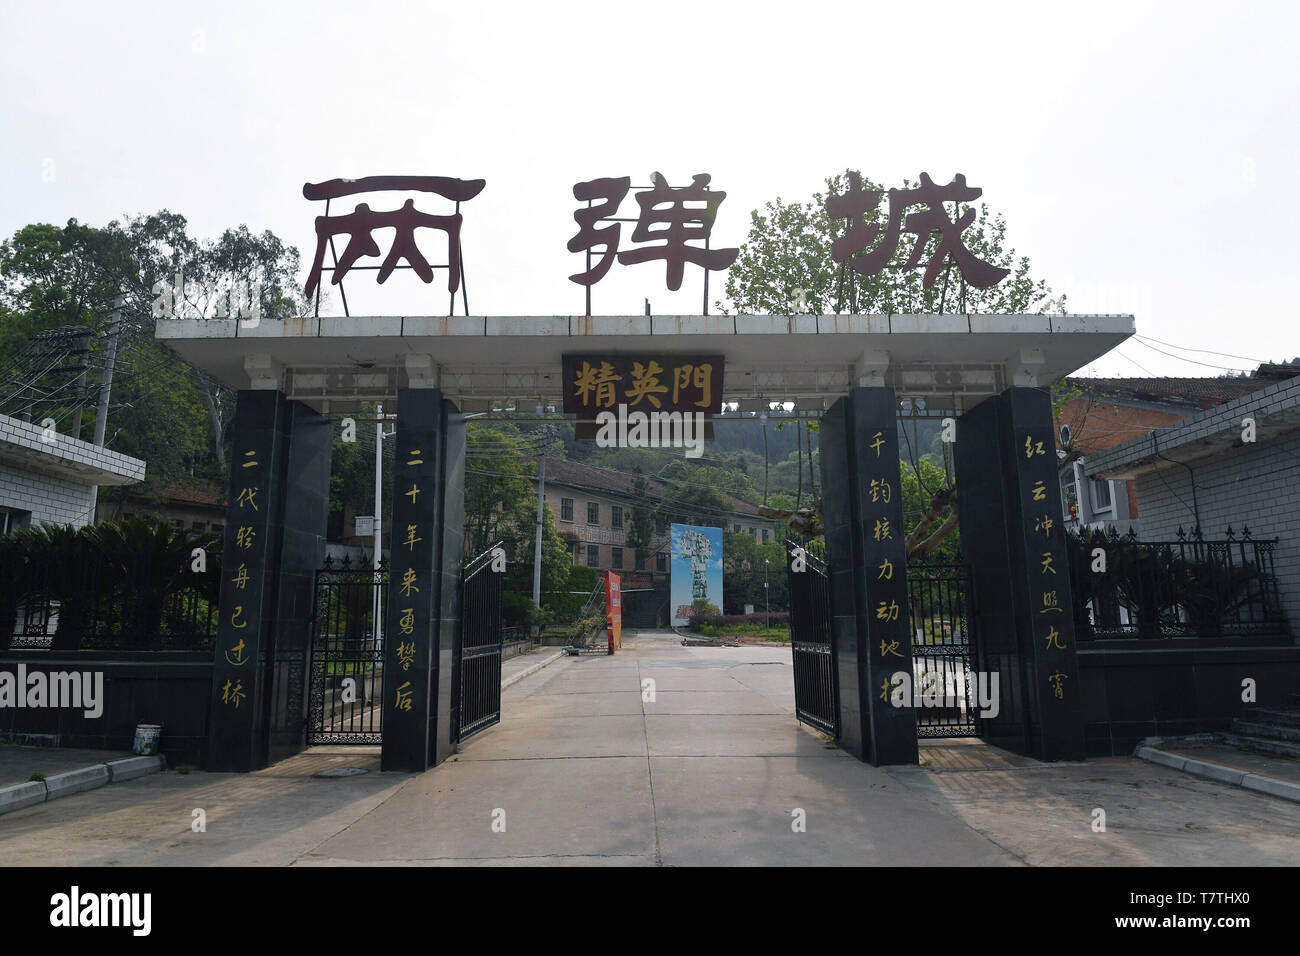 (190509) - CHENGDU, Mai 9, 2019 (Xinhua) - Foto am 23. April 2019 zeigt das Haupttor des Liangdancheng, d. h. die Stadt von Atombomben, der Website, wo Chinas erste Atom- und Wasserstoffbomben entwickelt wurden, sind im Kreis Zitong Mianyang, Provinz Sichuan im Südwesten Chinas. Zitong war die Heimat der Forschung Hauptsitz von Chinas Atomwaffenprogramm, wo ein Dutzend erstklassiger Wissenschaftler seit über einem Jahrzehnt auf Chinas erste Atom- und Wasserstoffbomben und Satellitenstarts in den 1960er und 1970er Jahren gearbeitet. (Xinhua / Liu Kun) Stockfoto